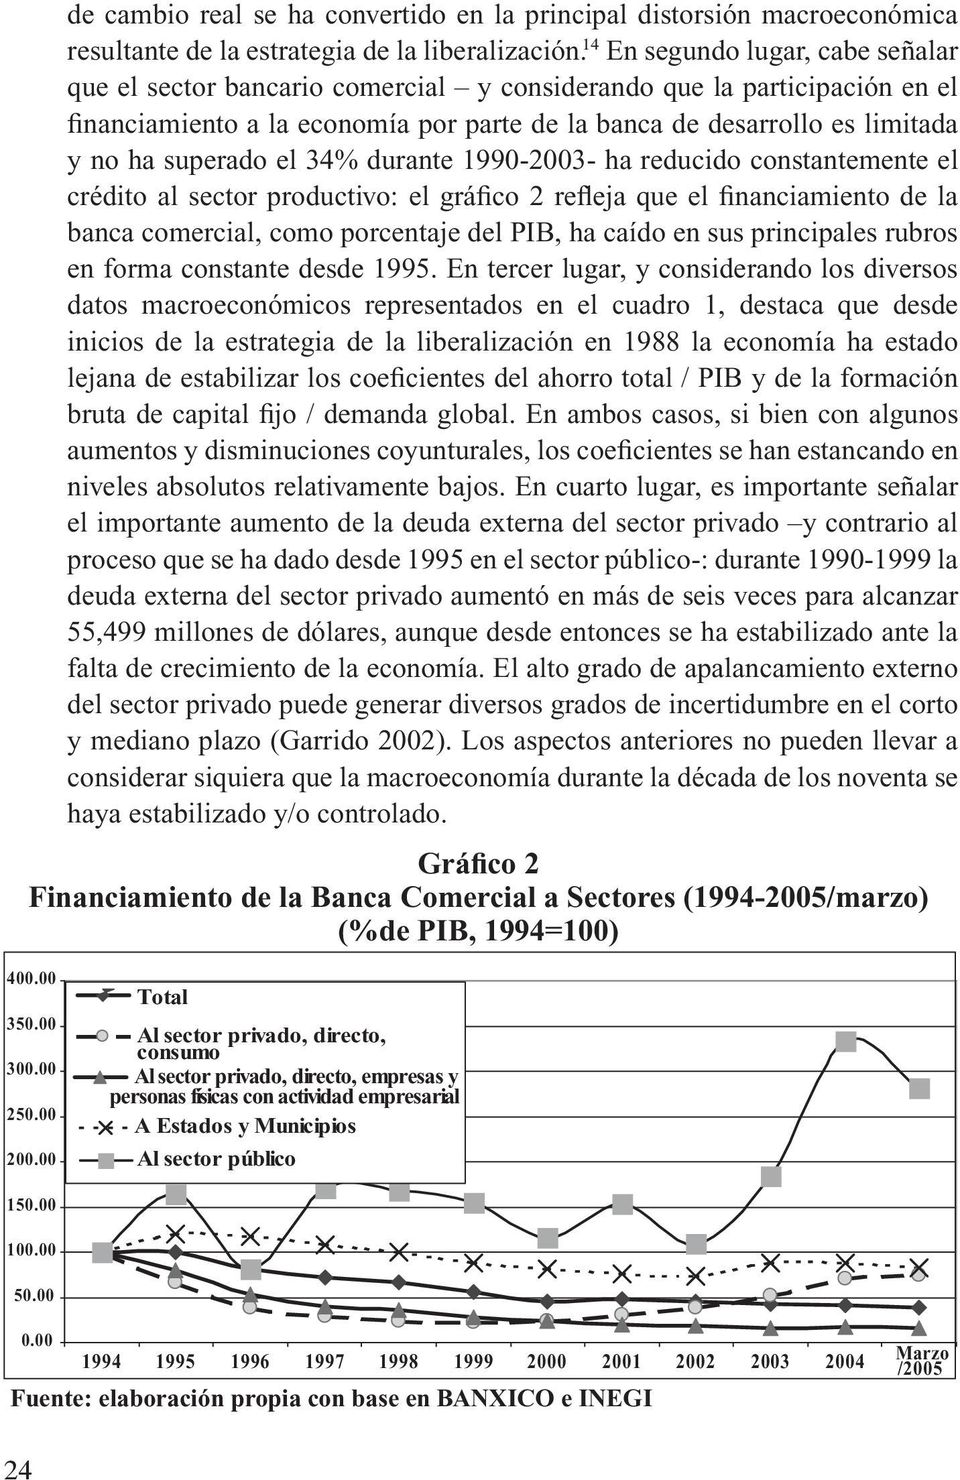 el 34% durante 19902003 ha reducido constantemente el crédito al sector productivo: el gráfico 2 refleja que el financiamiento de la banca comercial, como porcentaje del PIB, ha caído en sus